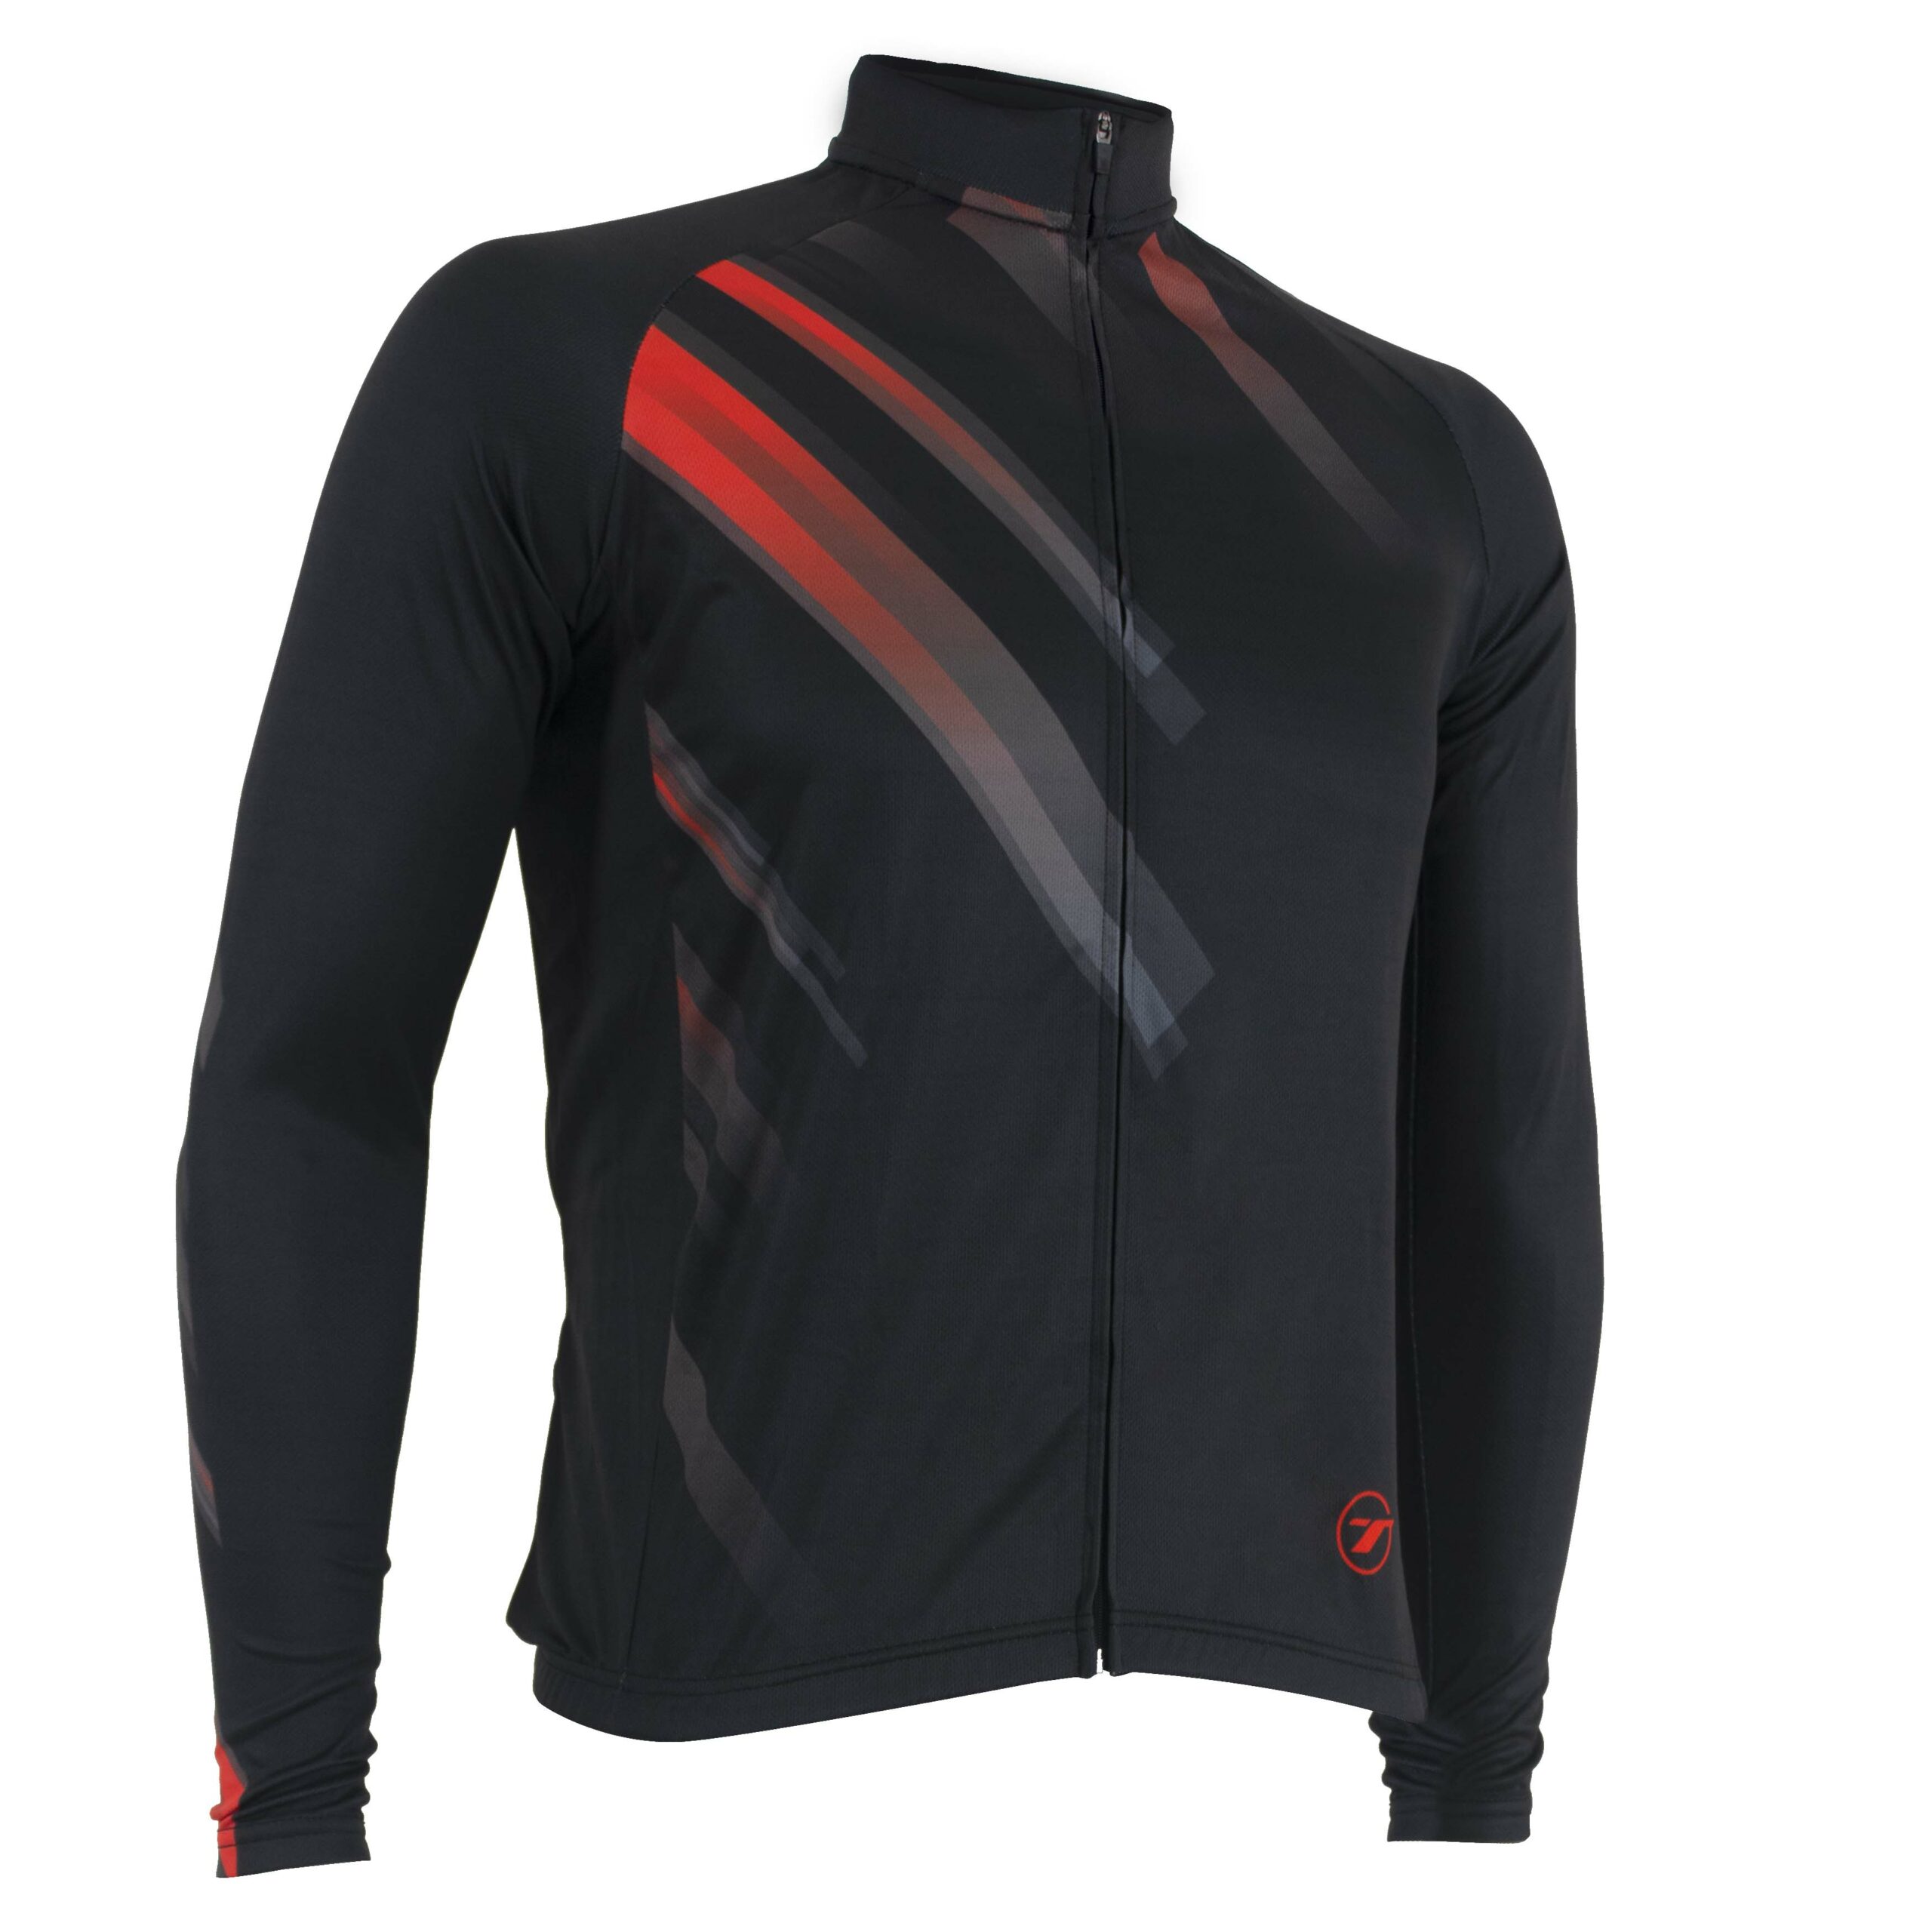 Camisa manga longa para ciclismo SUNNY | RIDE LINE - Preto/Vermelho, GG